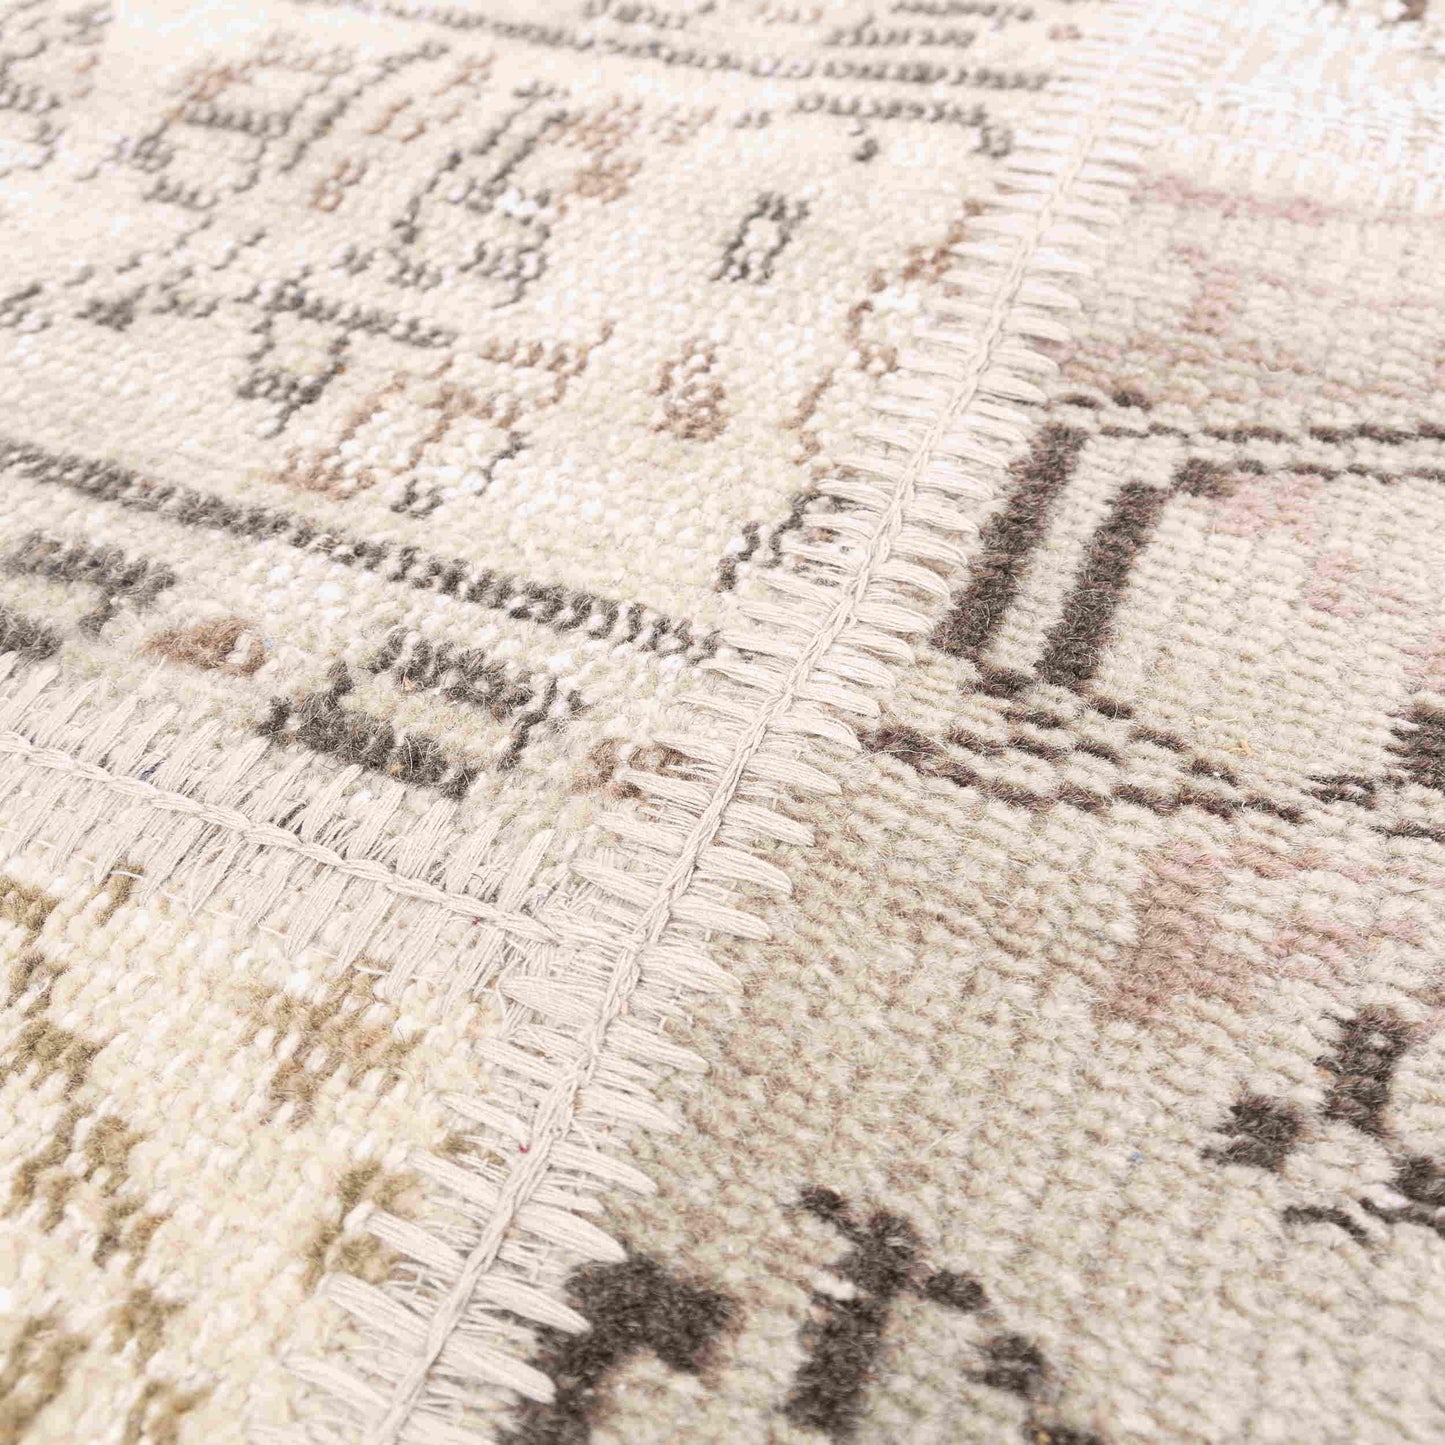 Oriental Turkish Runner Rug Handmade Wool On Wool Patchwork 80 x 198 Cm - 2' 8'' x 6' 6'' Sand C007